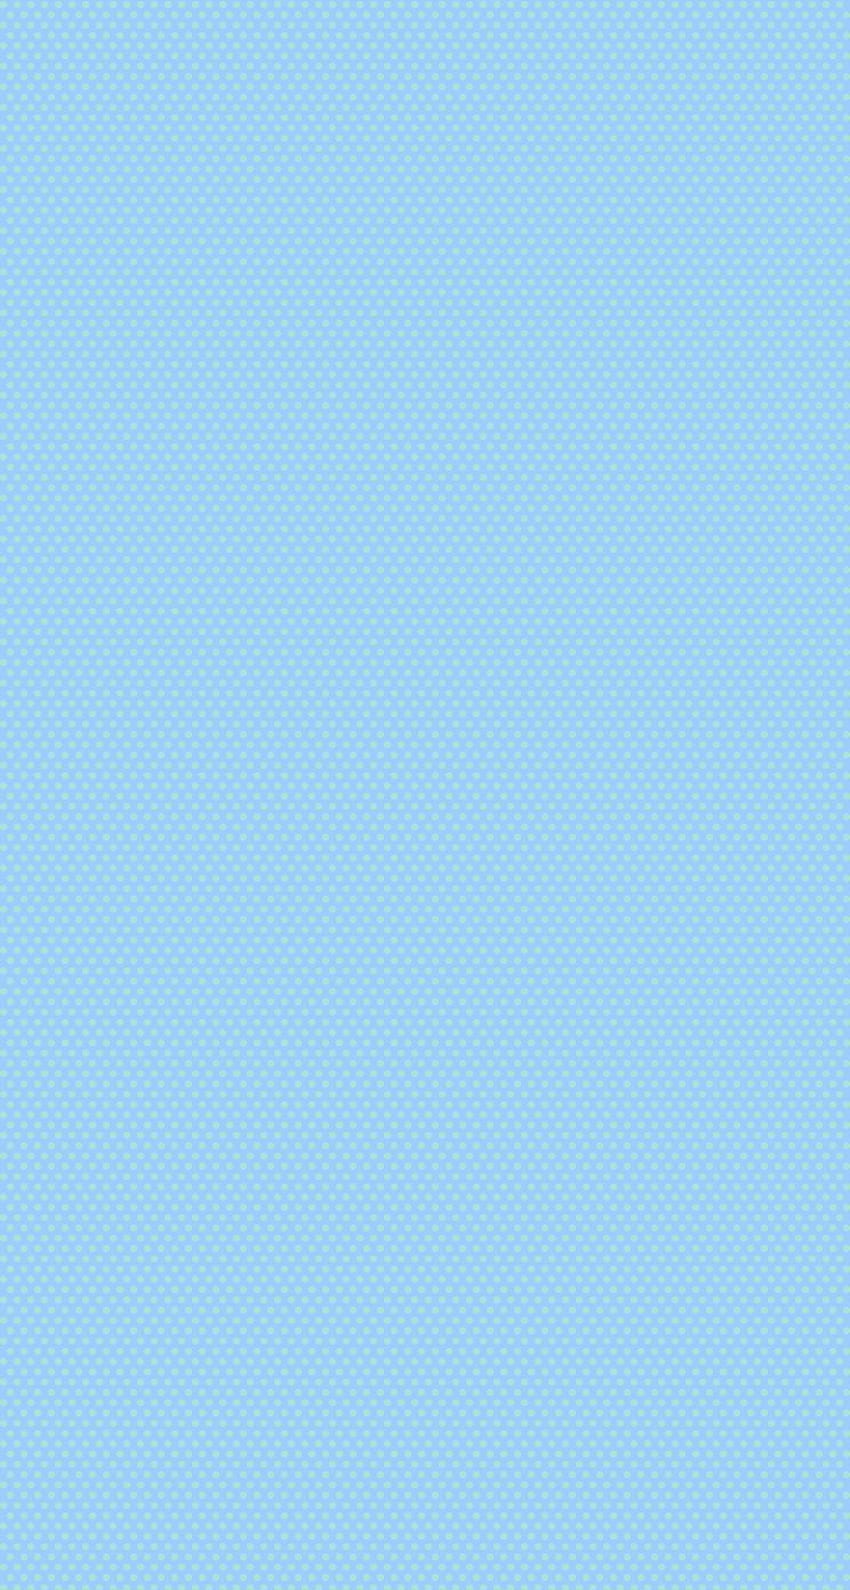 Parte superior azul claro azul claro, azul cielo claro fondo de pantalla del teléfono